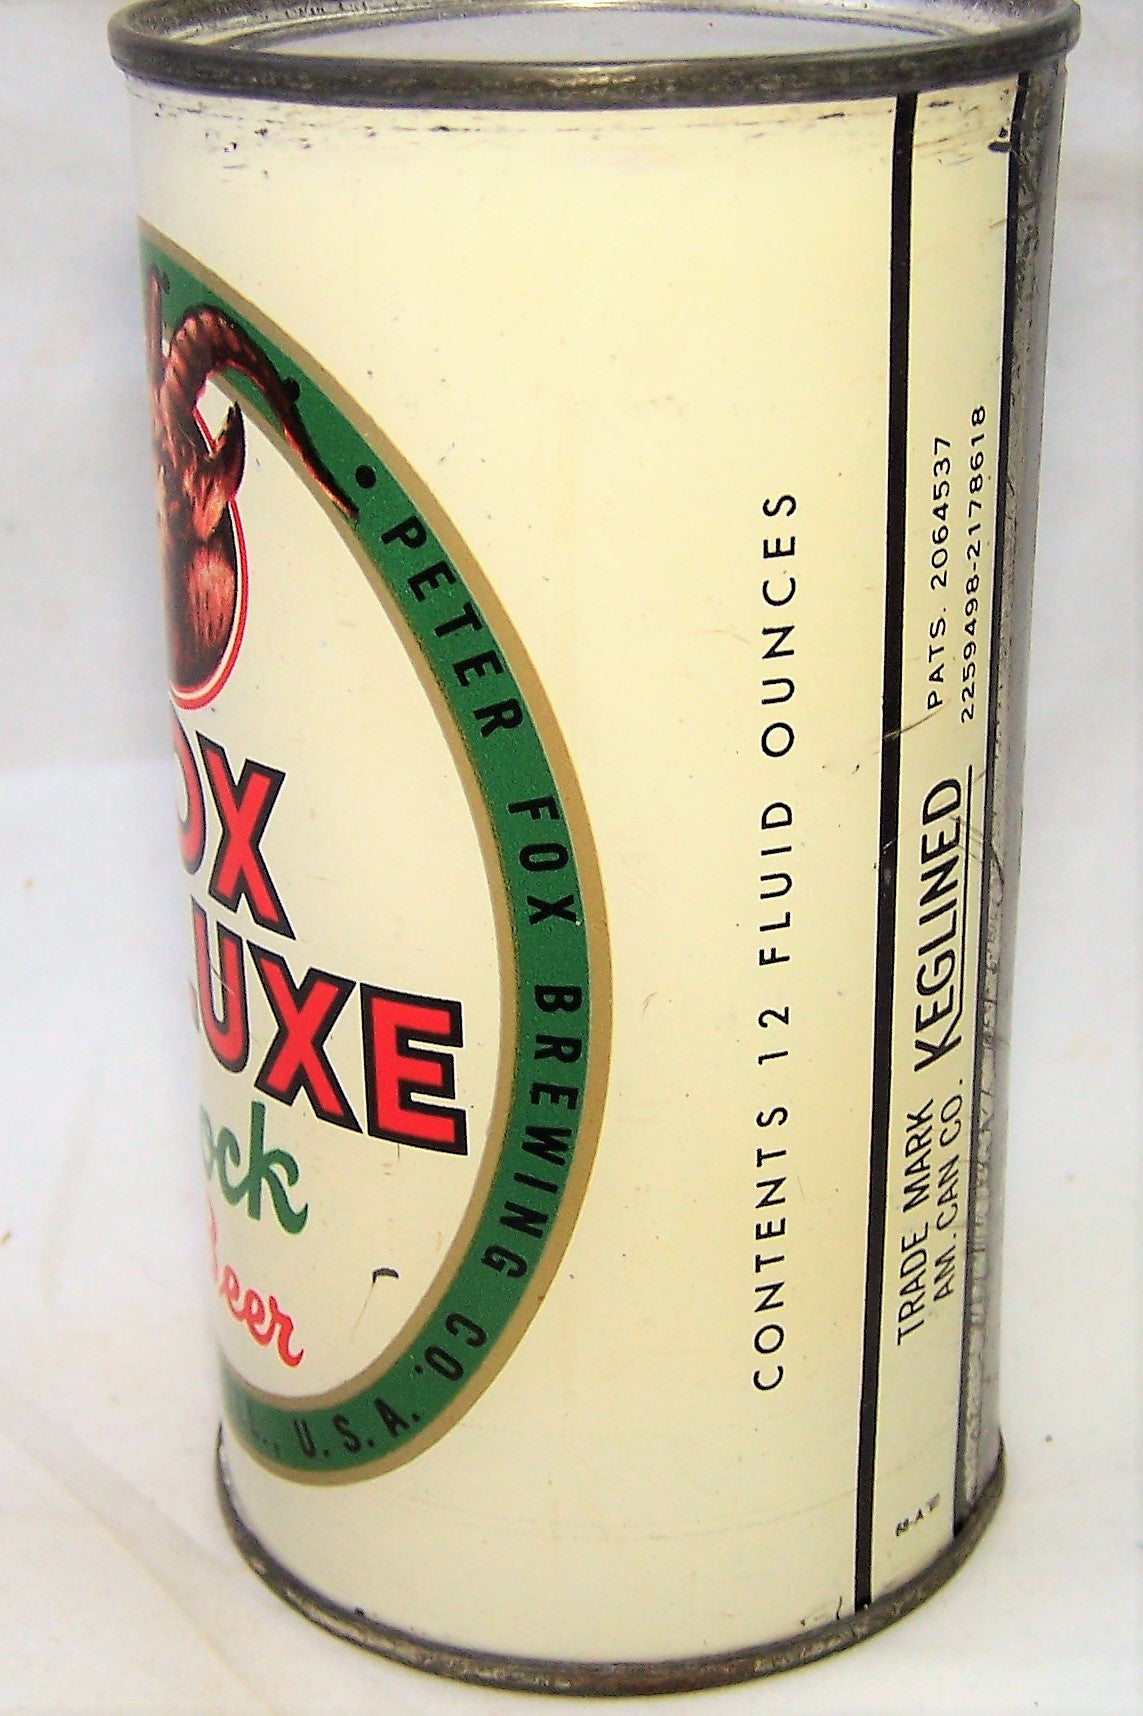 Fox Deluxe Bock Beer, USBC 65-09, Grade 1 Sold on 11/28/18